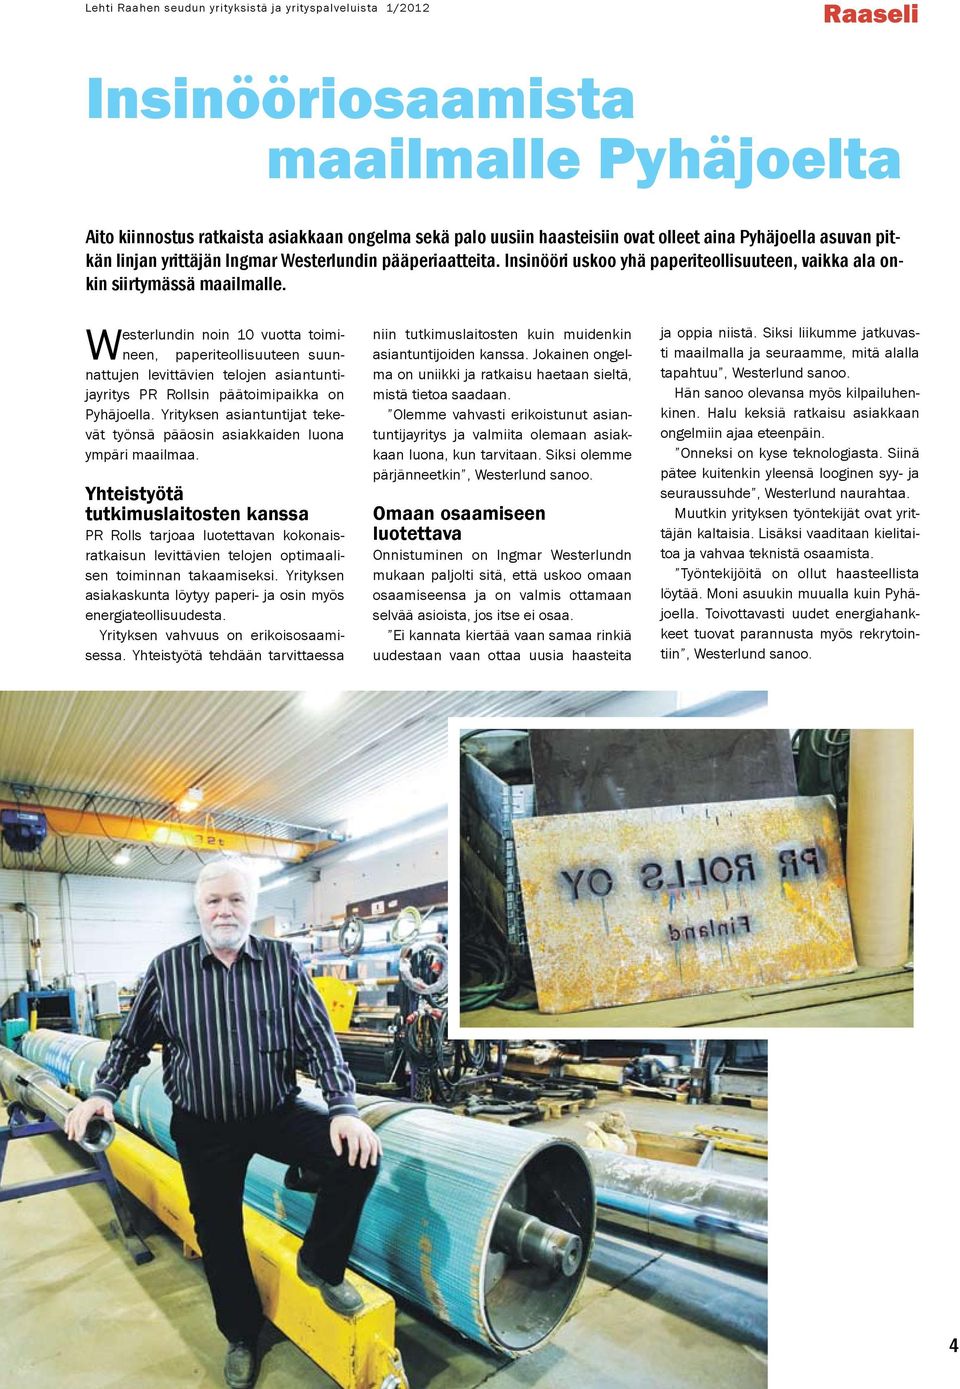 Westerlundin noin 10 vuotta toimineen, paperiteollisuuteen suunnattujen levittävien telojen asiantuntijayritys PR Rollsin päätoimipaikka on Pyhäjoella.